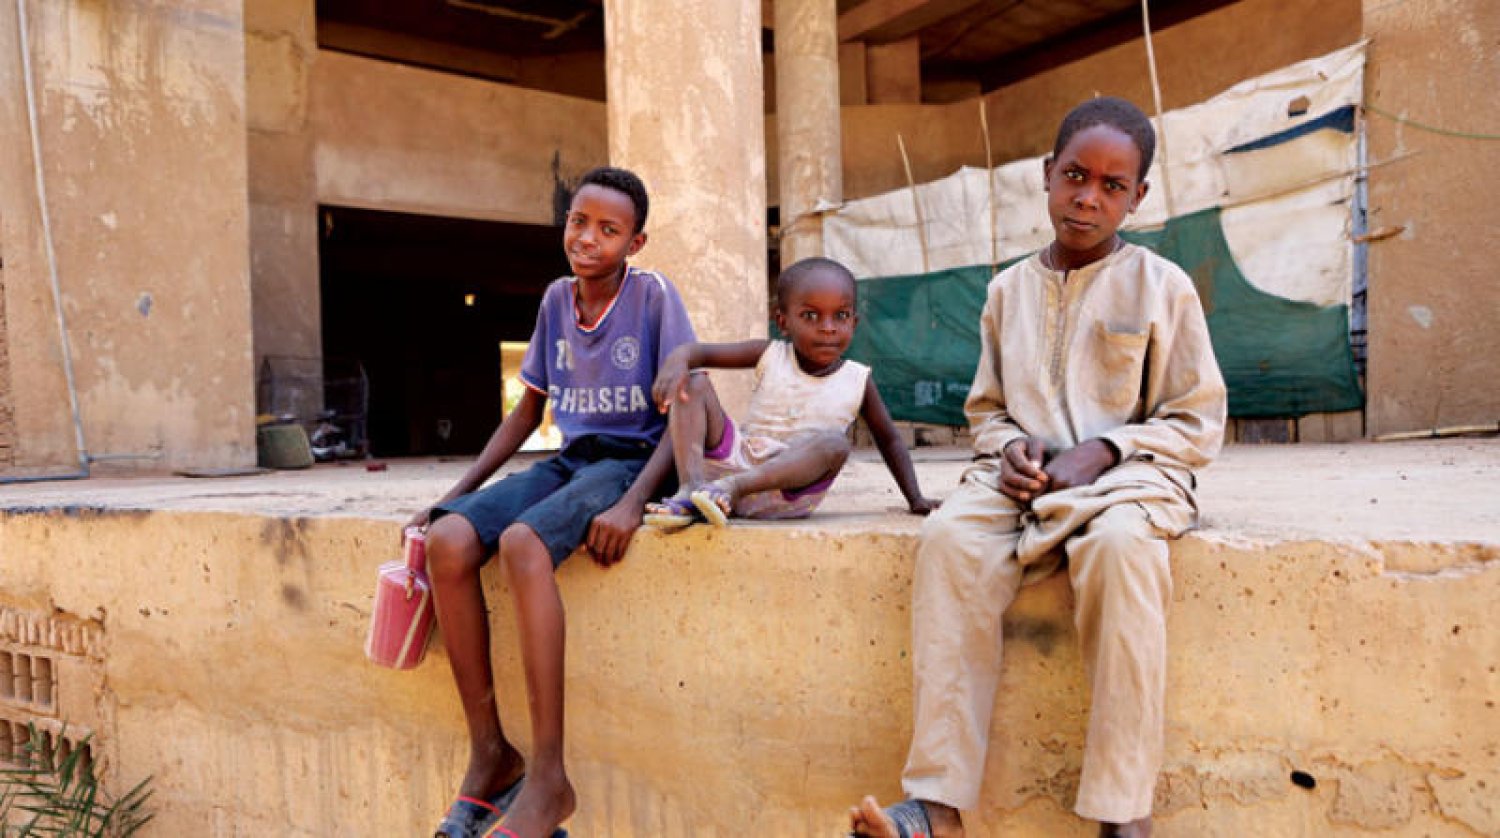 استمرار الحرب ``المليجيشية`` الكارثية فى السودان، يُكرّس الإعتداء على الحق فى ``التعليم من أجل سلامٍ دائم``